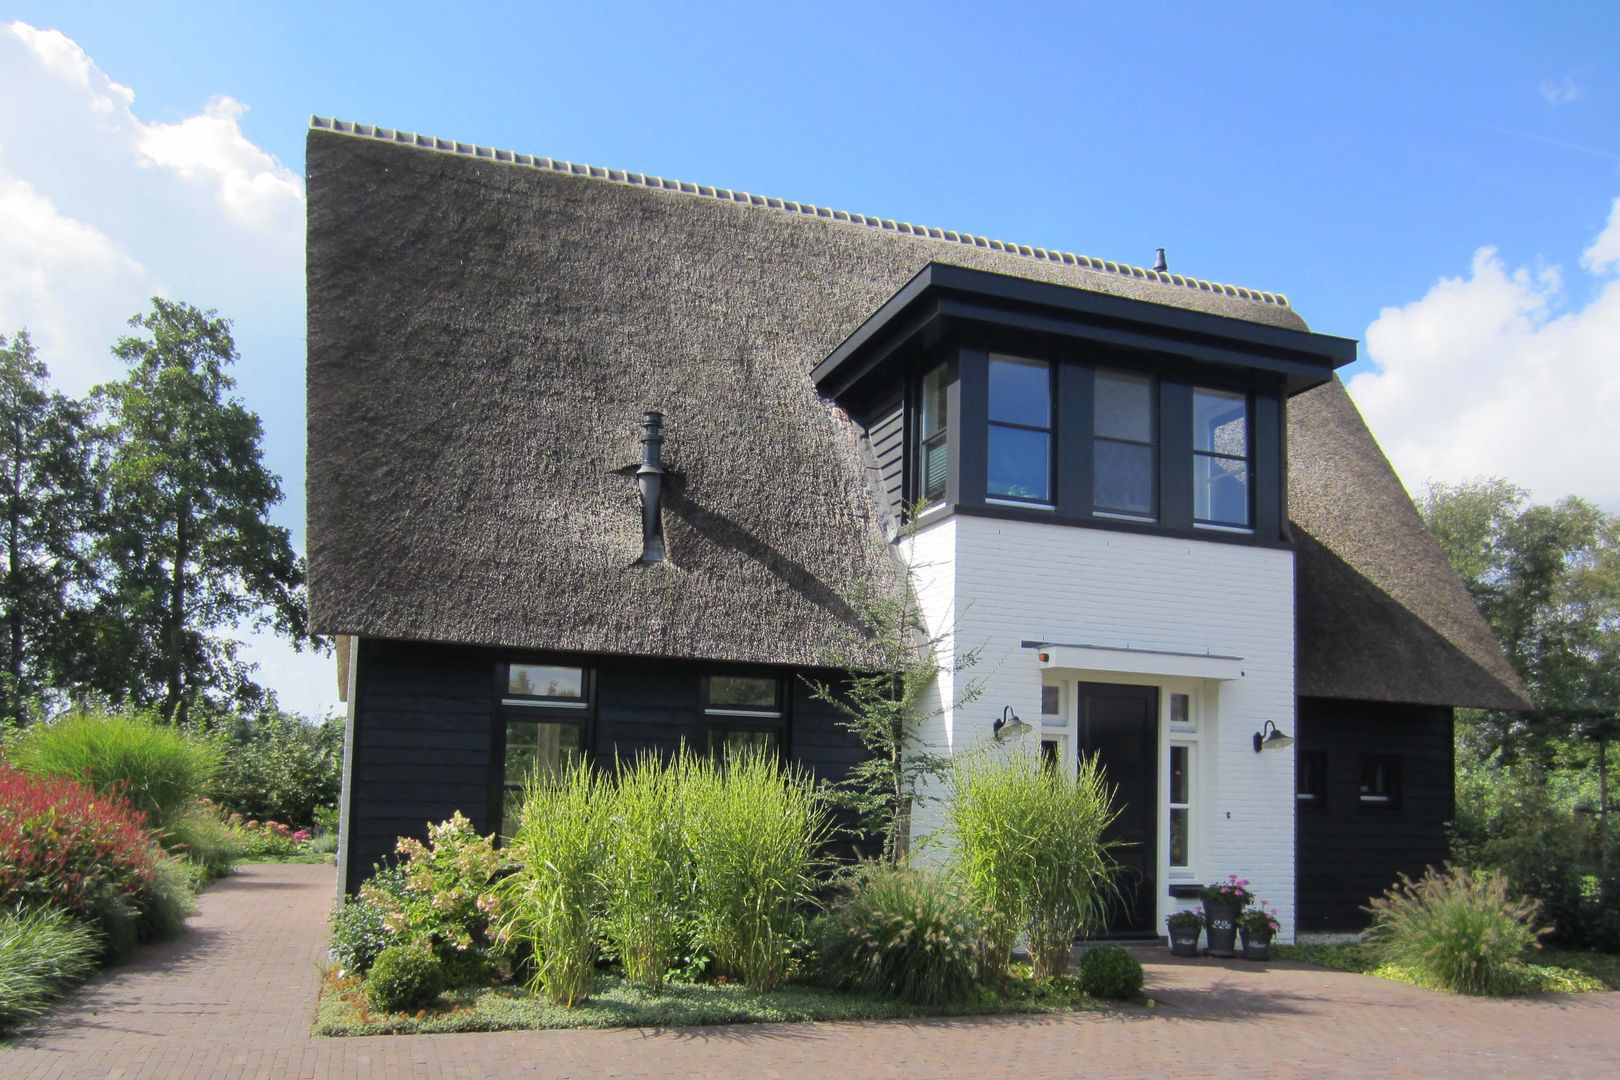 Speelse rietgedekte villa in buitengebied Barneveld, 01 Architecten 01 Architecten